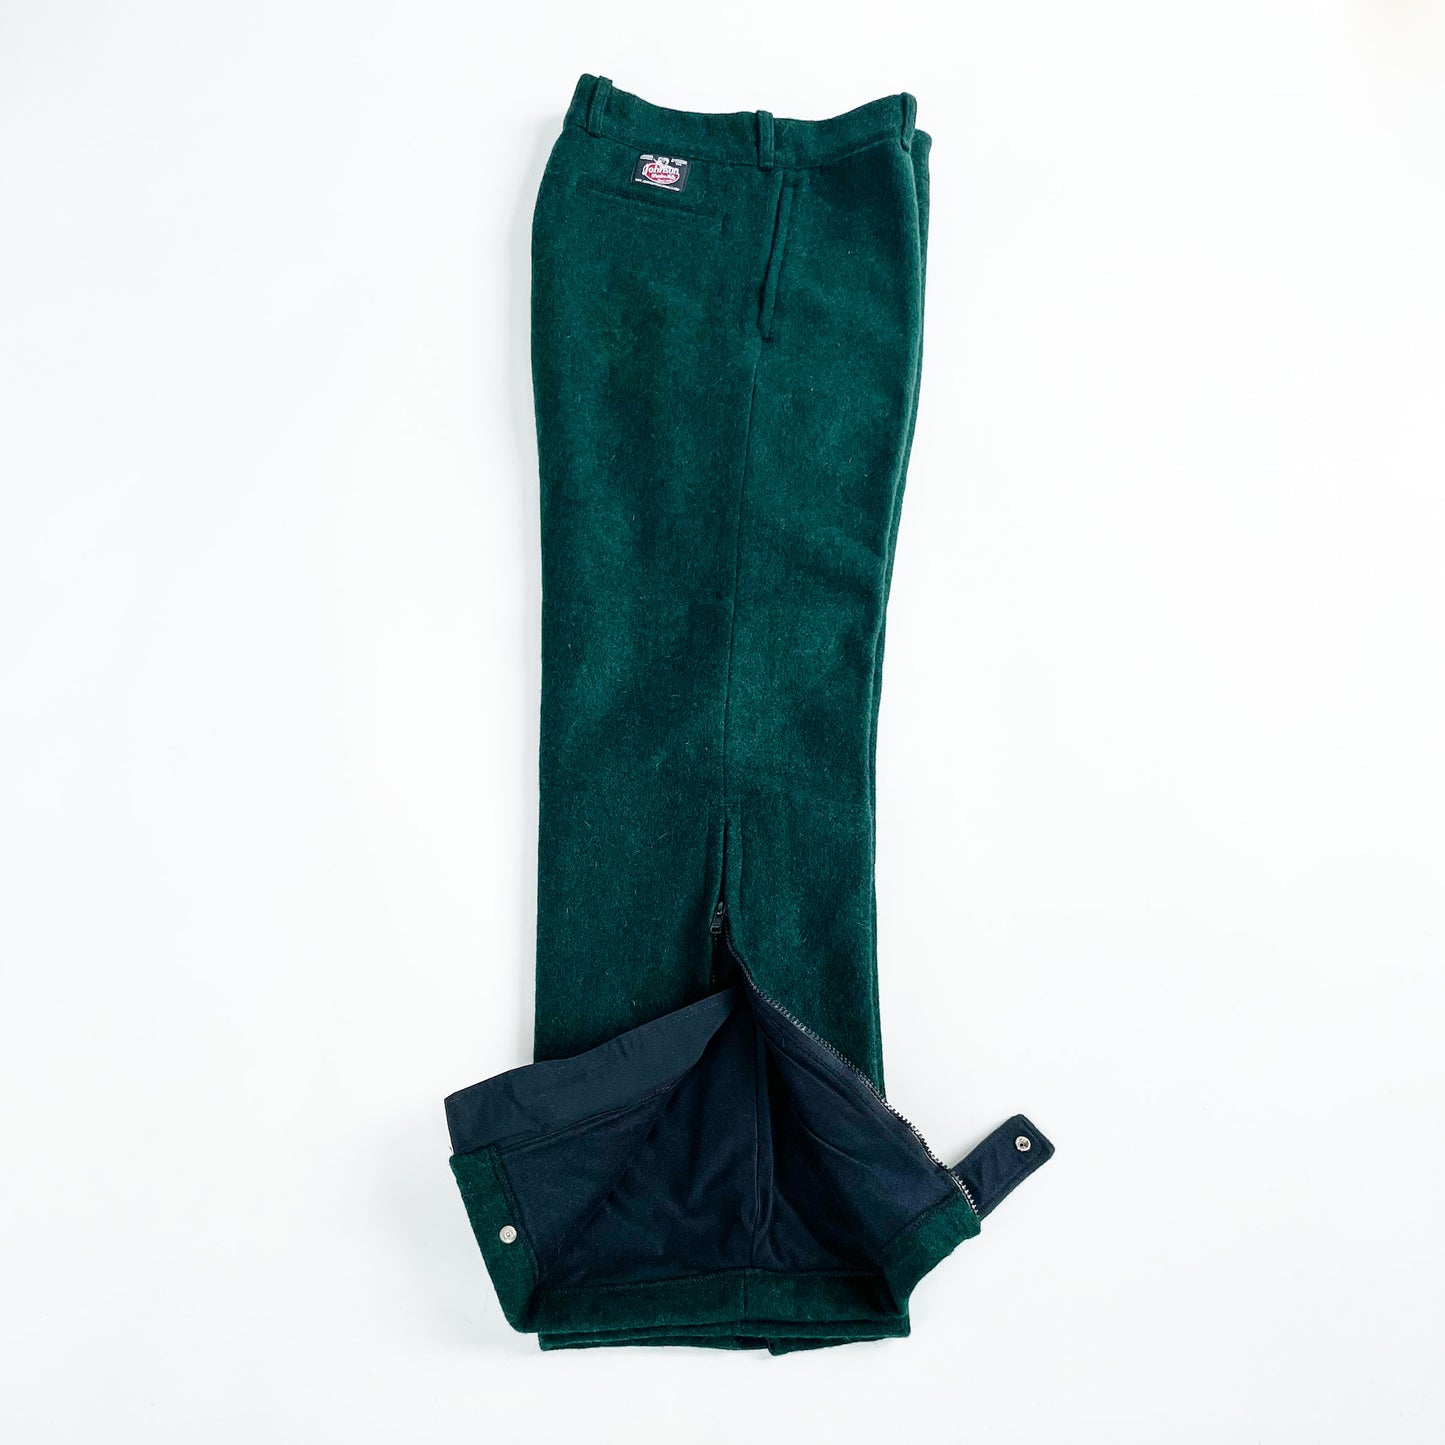 Wool Zip Pants - Lined